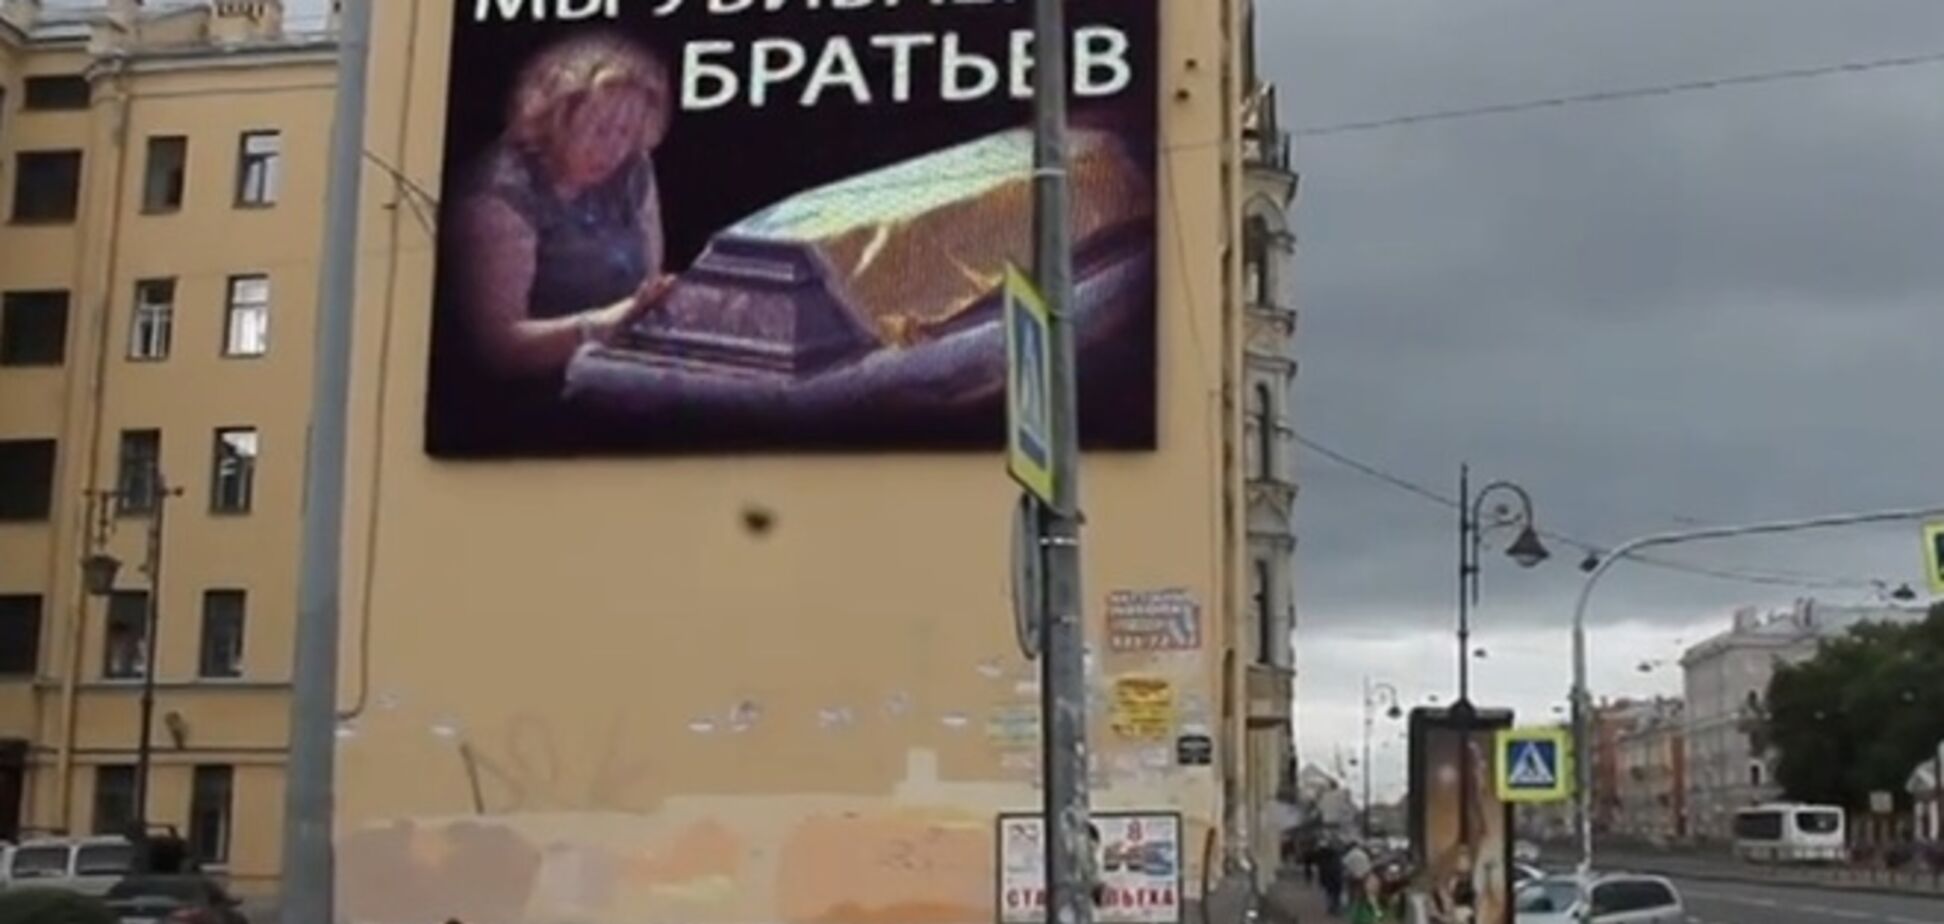 'Ми вбиваємо братів': хакери показали в Пітері ролик проти війни з Україною